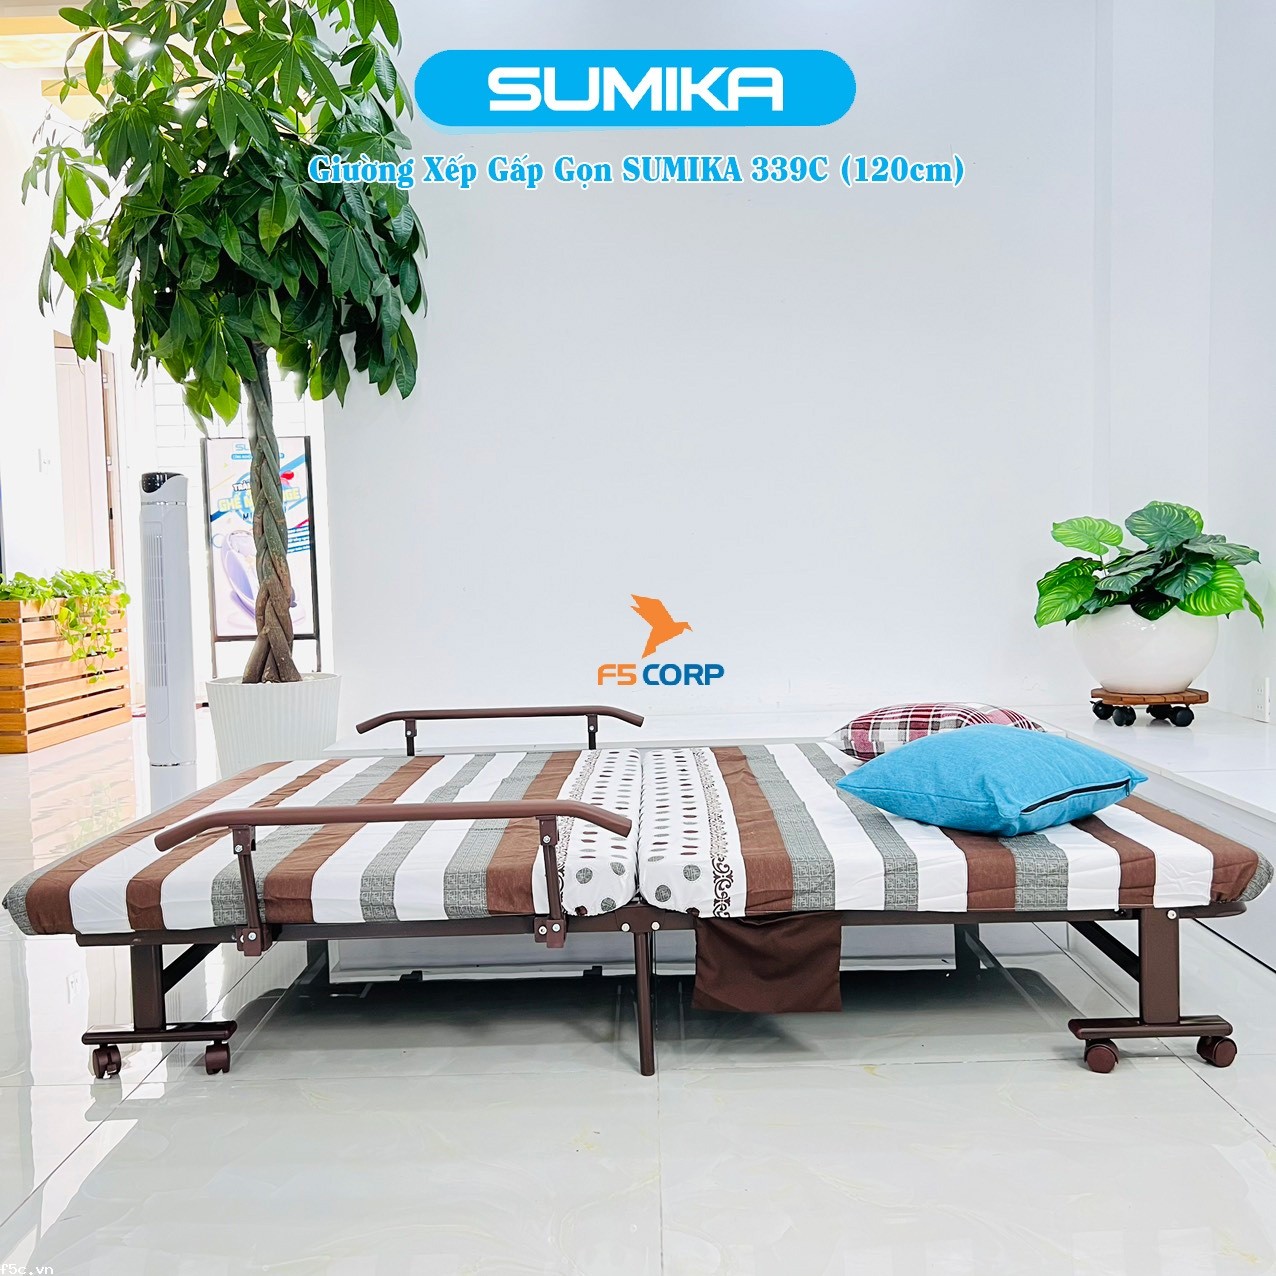 Giường nệm xếp gọn đa năng kiểu dáng Hàn Quốc SUMIKA 339C, rộng 120cm